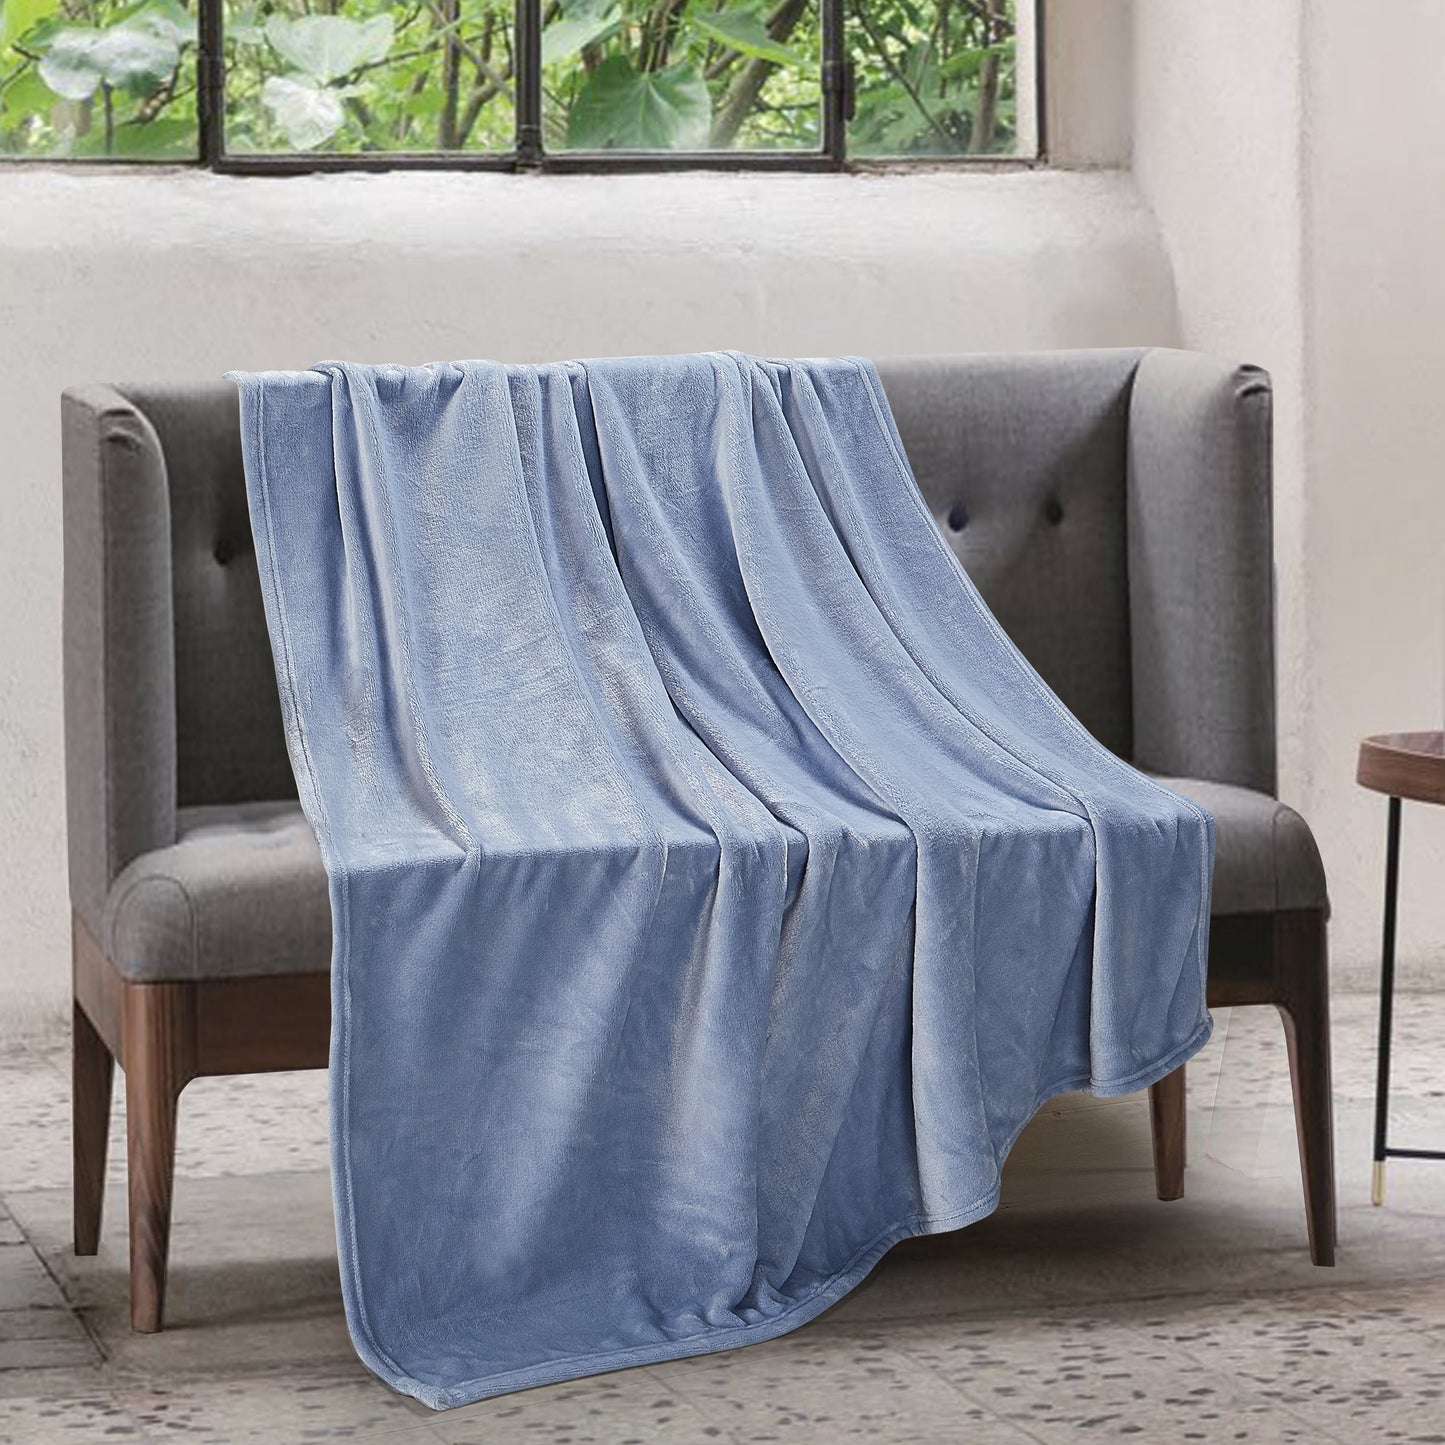 Classic Solid Fleece Blanket - Chambray